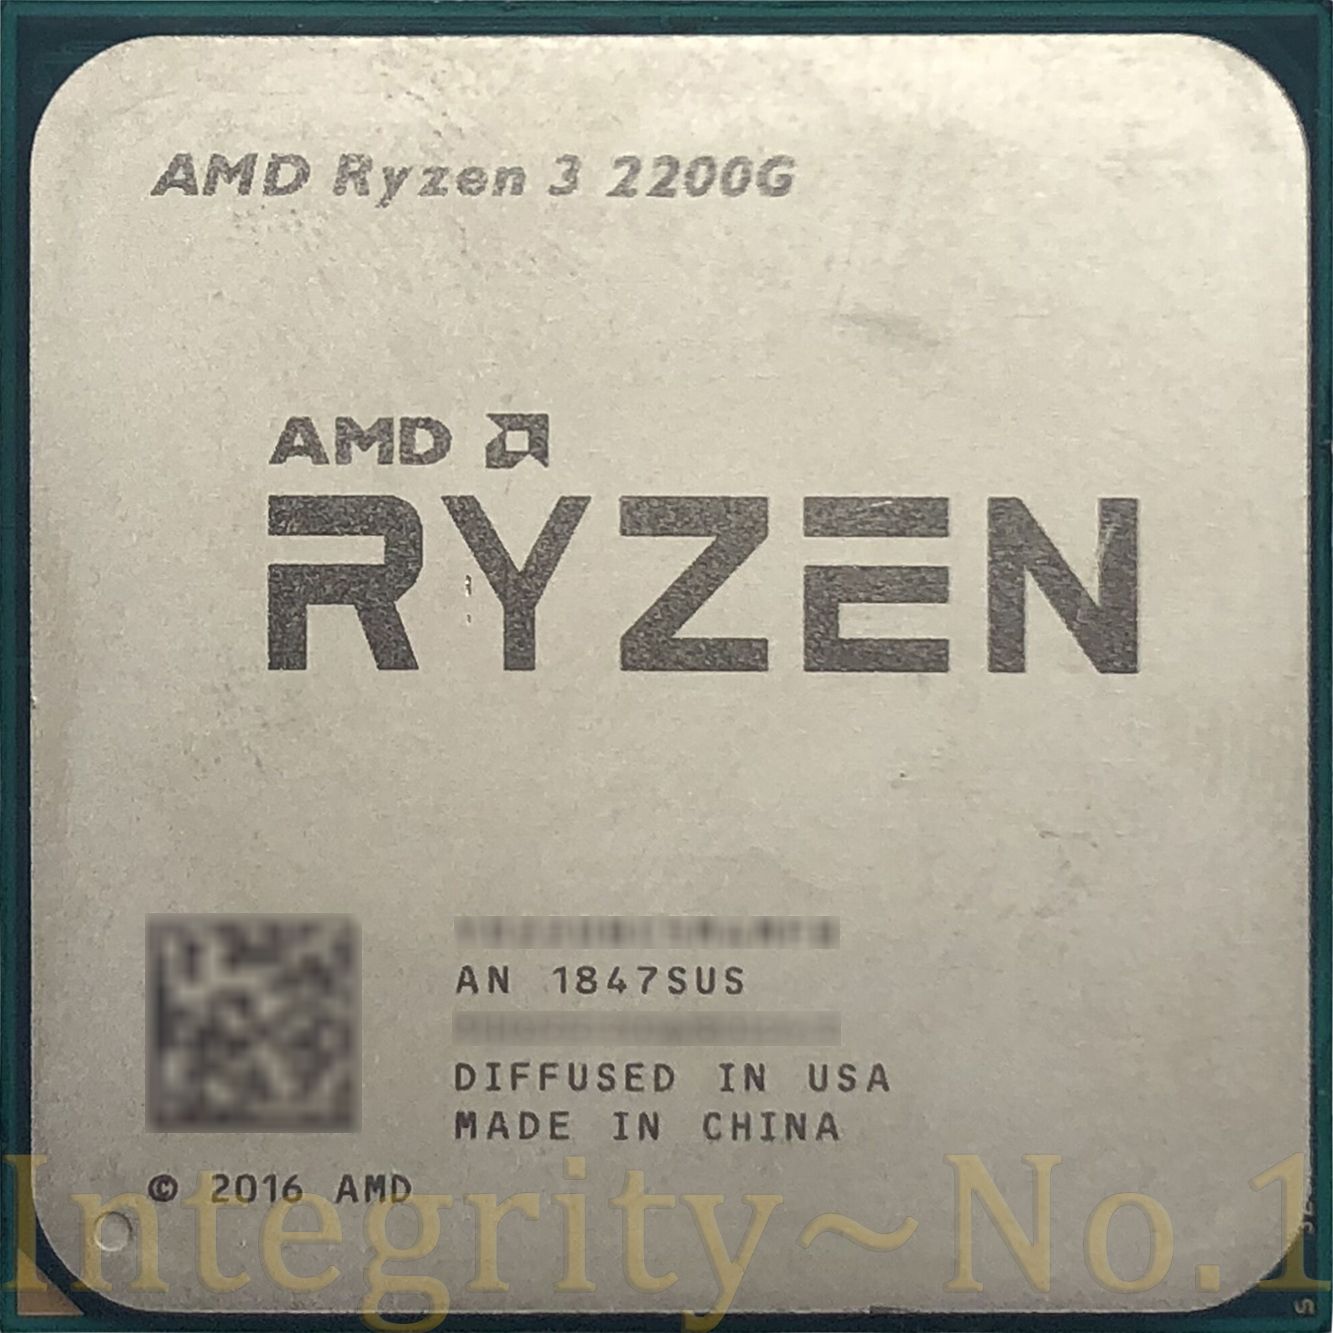 5 3400g купить. Ryzen 5 3400g. Ryzen 5 1500x. Процессор АМД райзен 5. Ryzen 5 1500x купить.